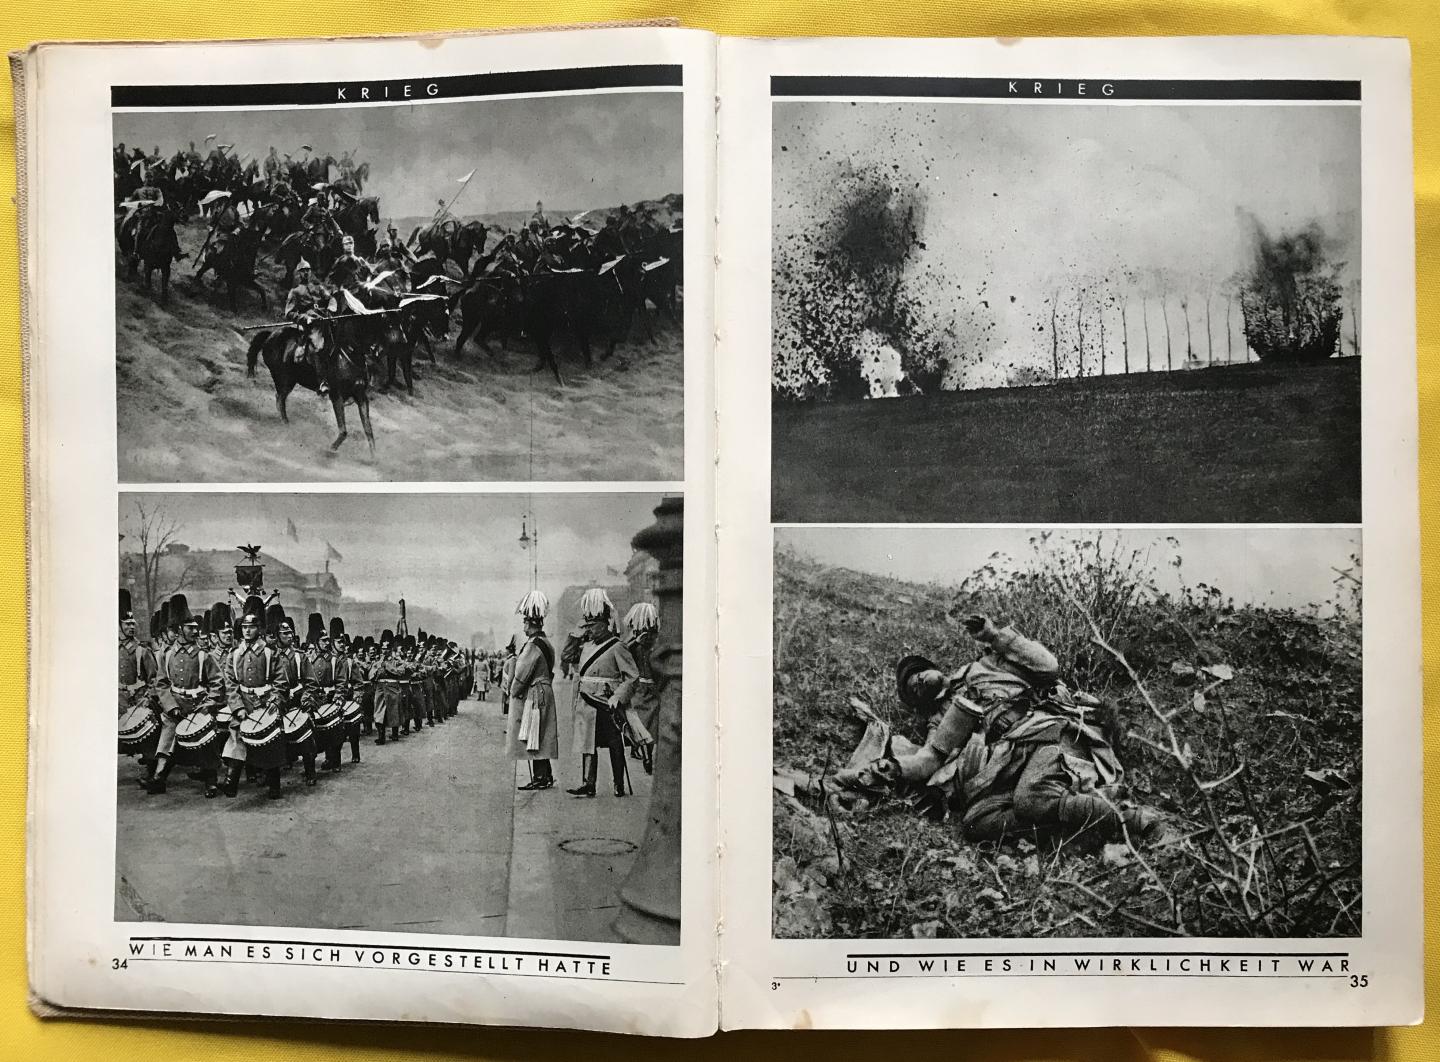 Márai, Sándor & Dormándi, László - 1910 - 1930: Zwanzig jahre weltgeschichte in 700 bildern / druk 1